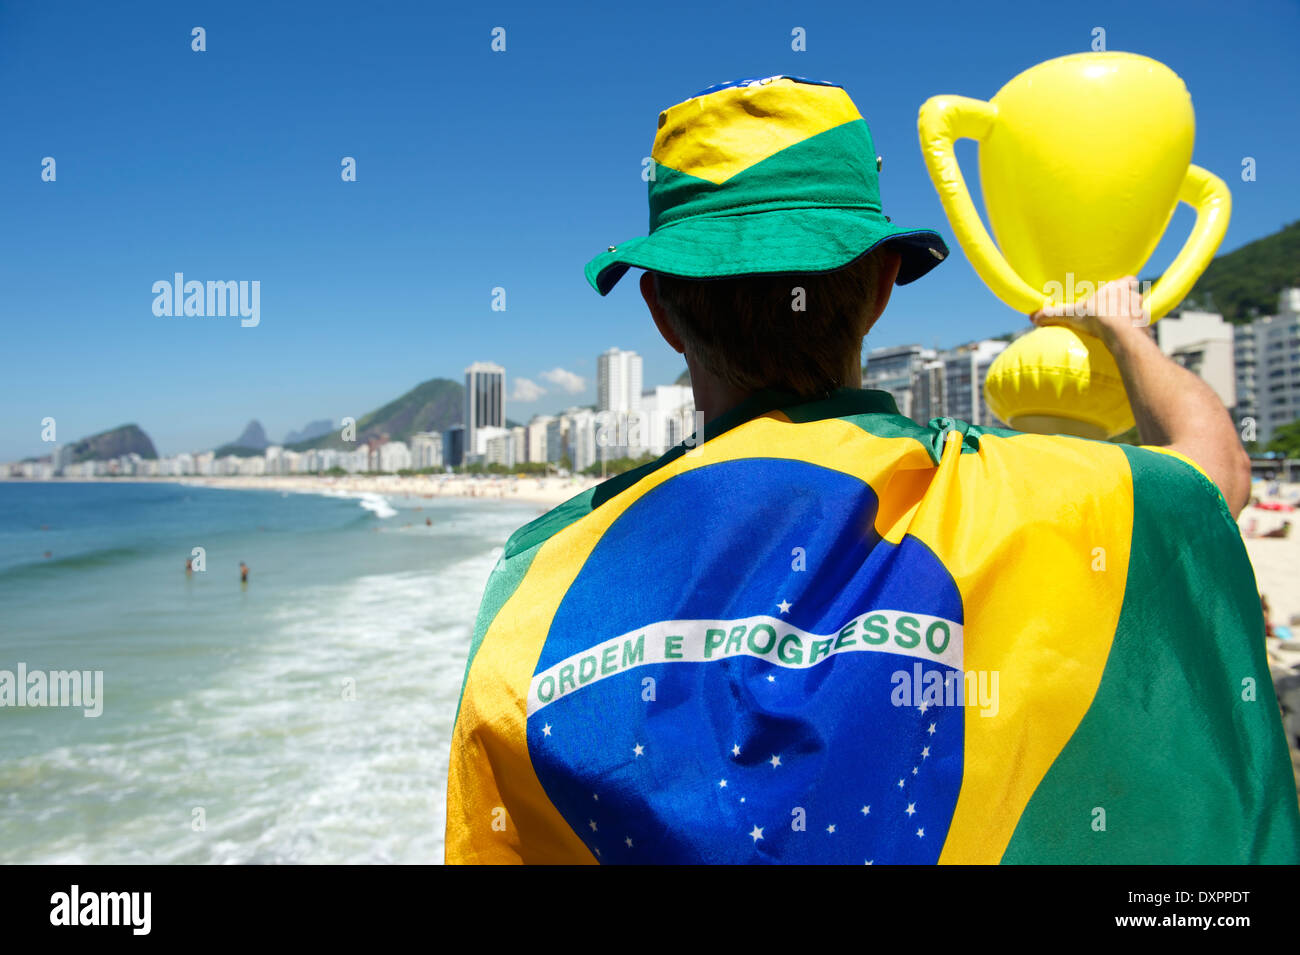 Fier drapeau brésilien à regalia holding inflatable trophy au-dessus les toits de la ville de Rio de Janeiro Brésil Banque D'Images